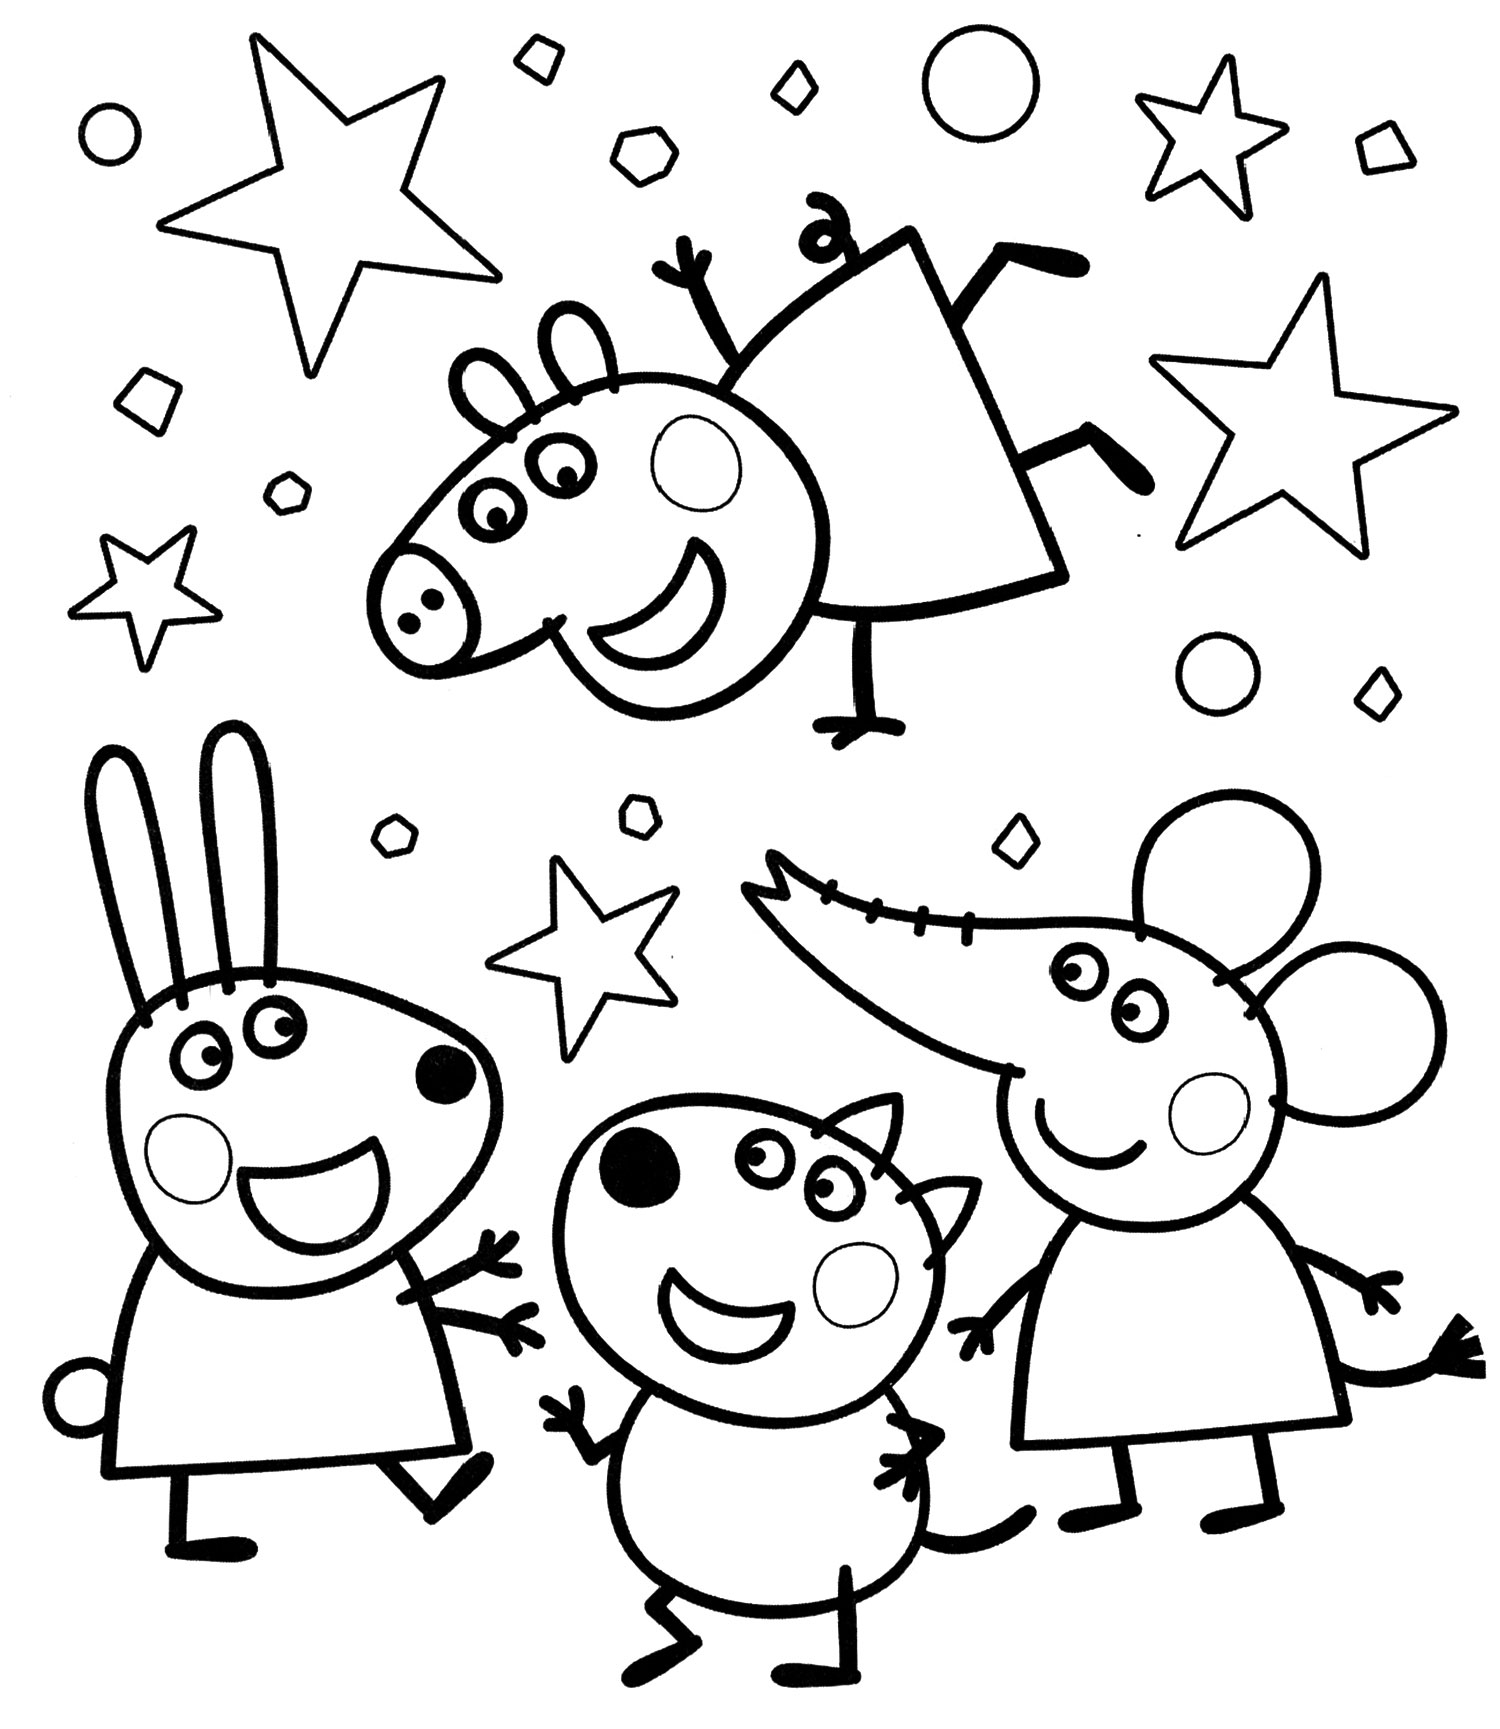 Распечатать раскраски Свинка Пеппа для детей бесплатно